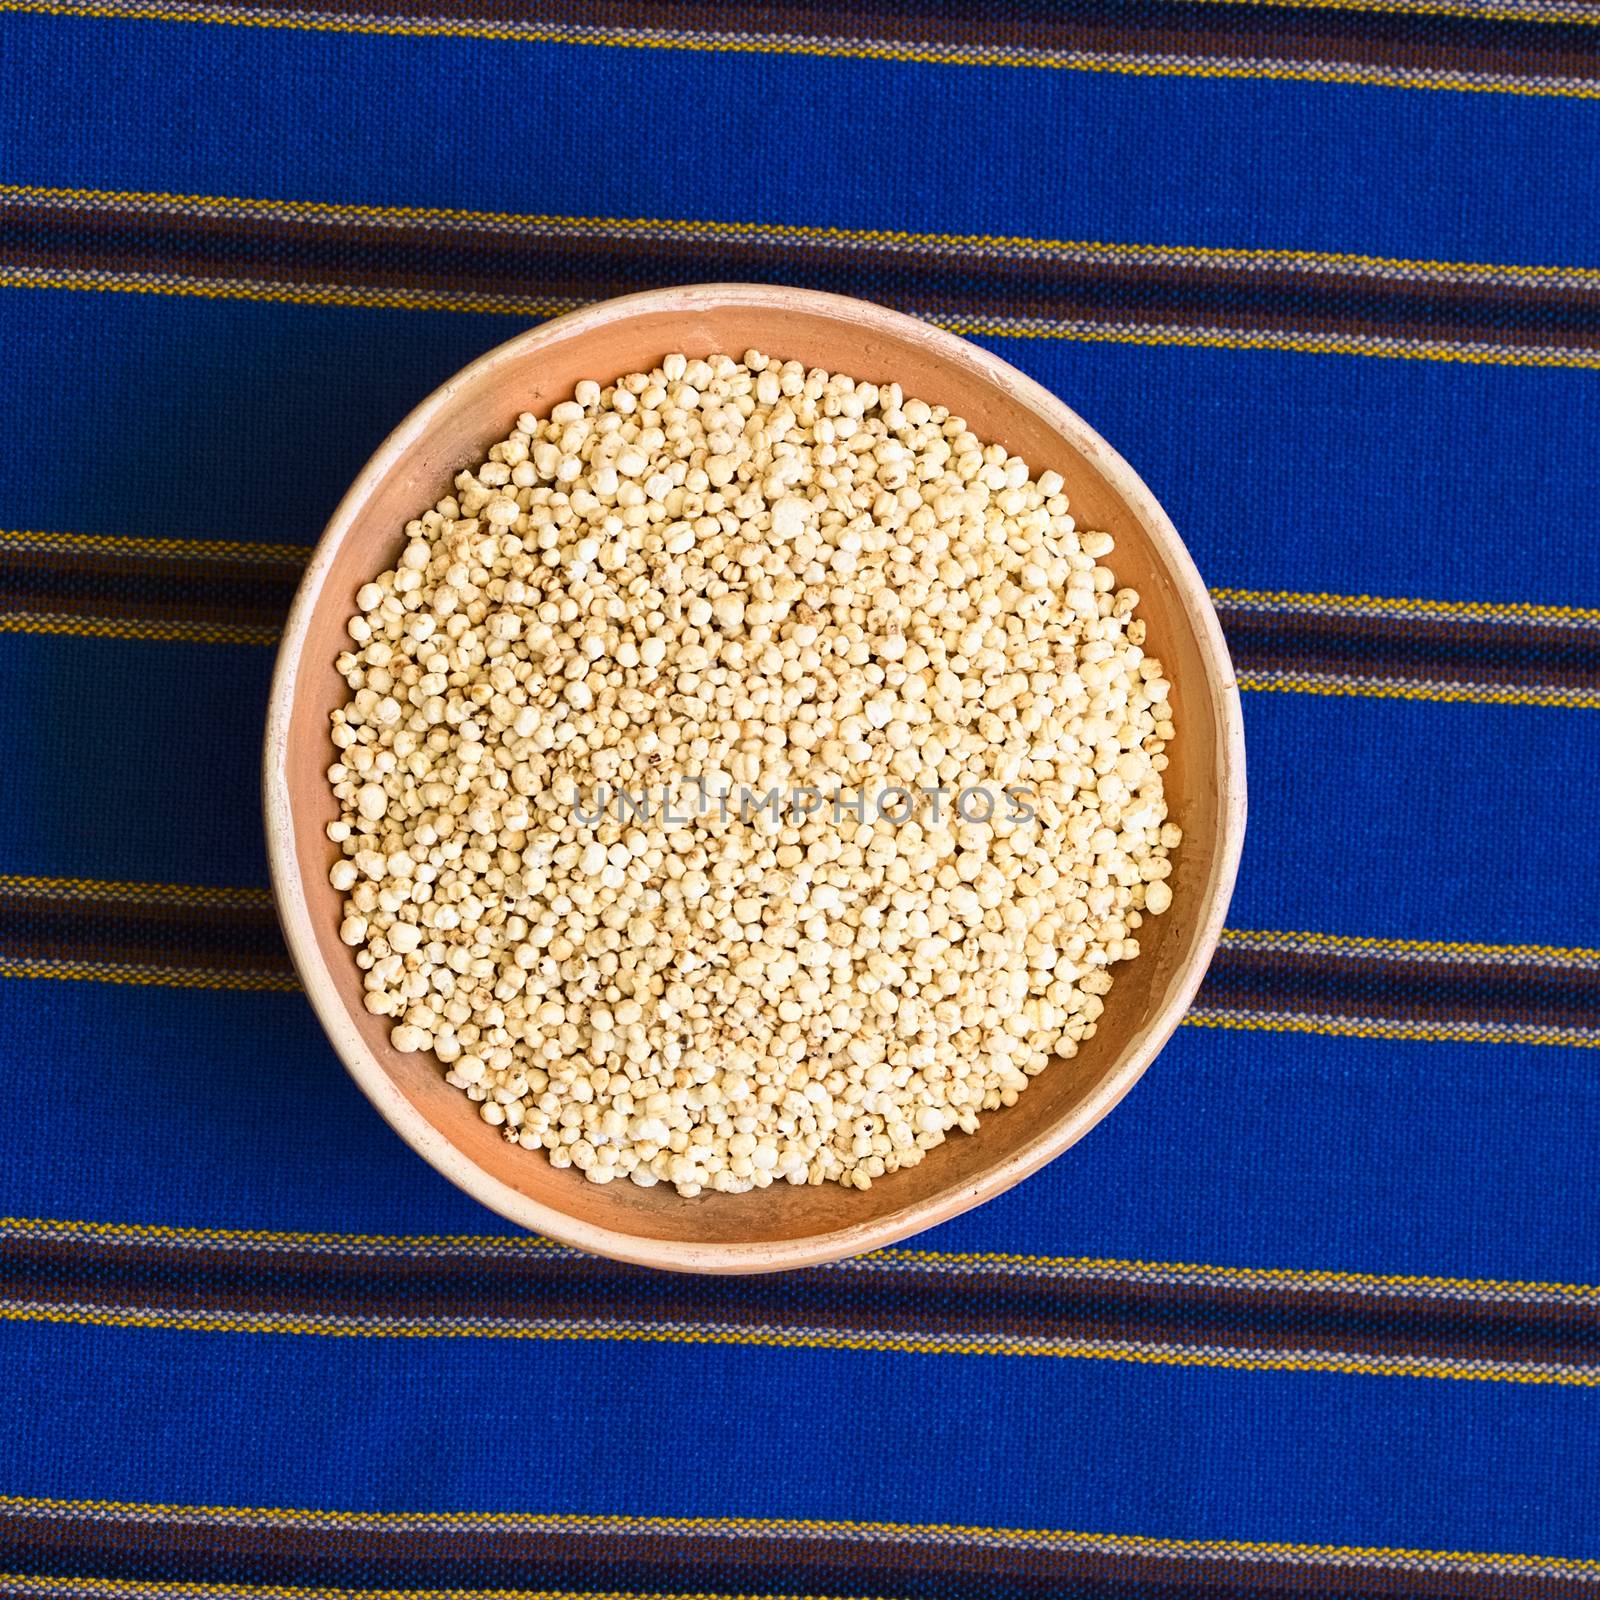 Popped Quinoa Cereal by ildi